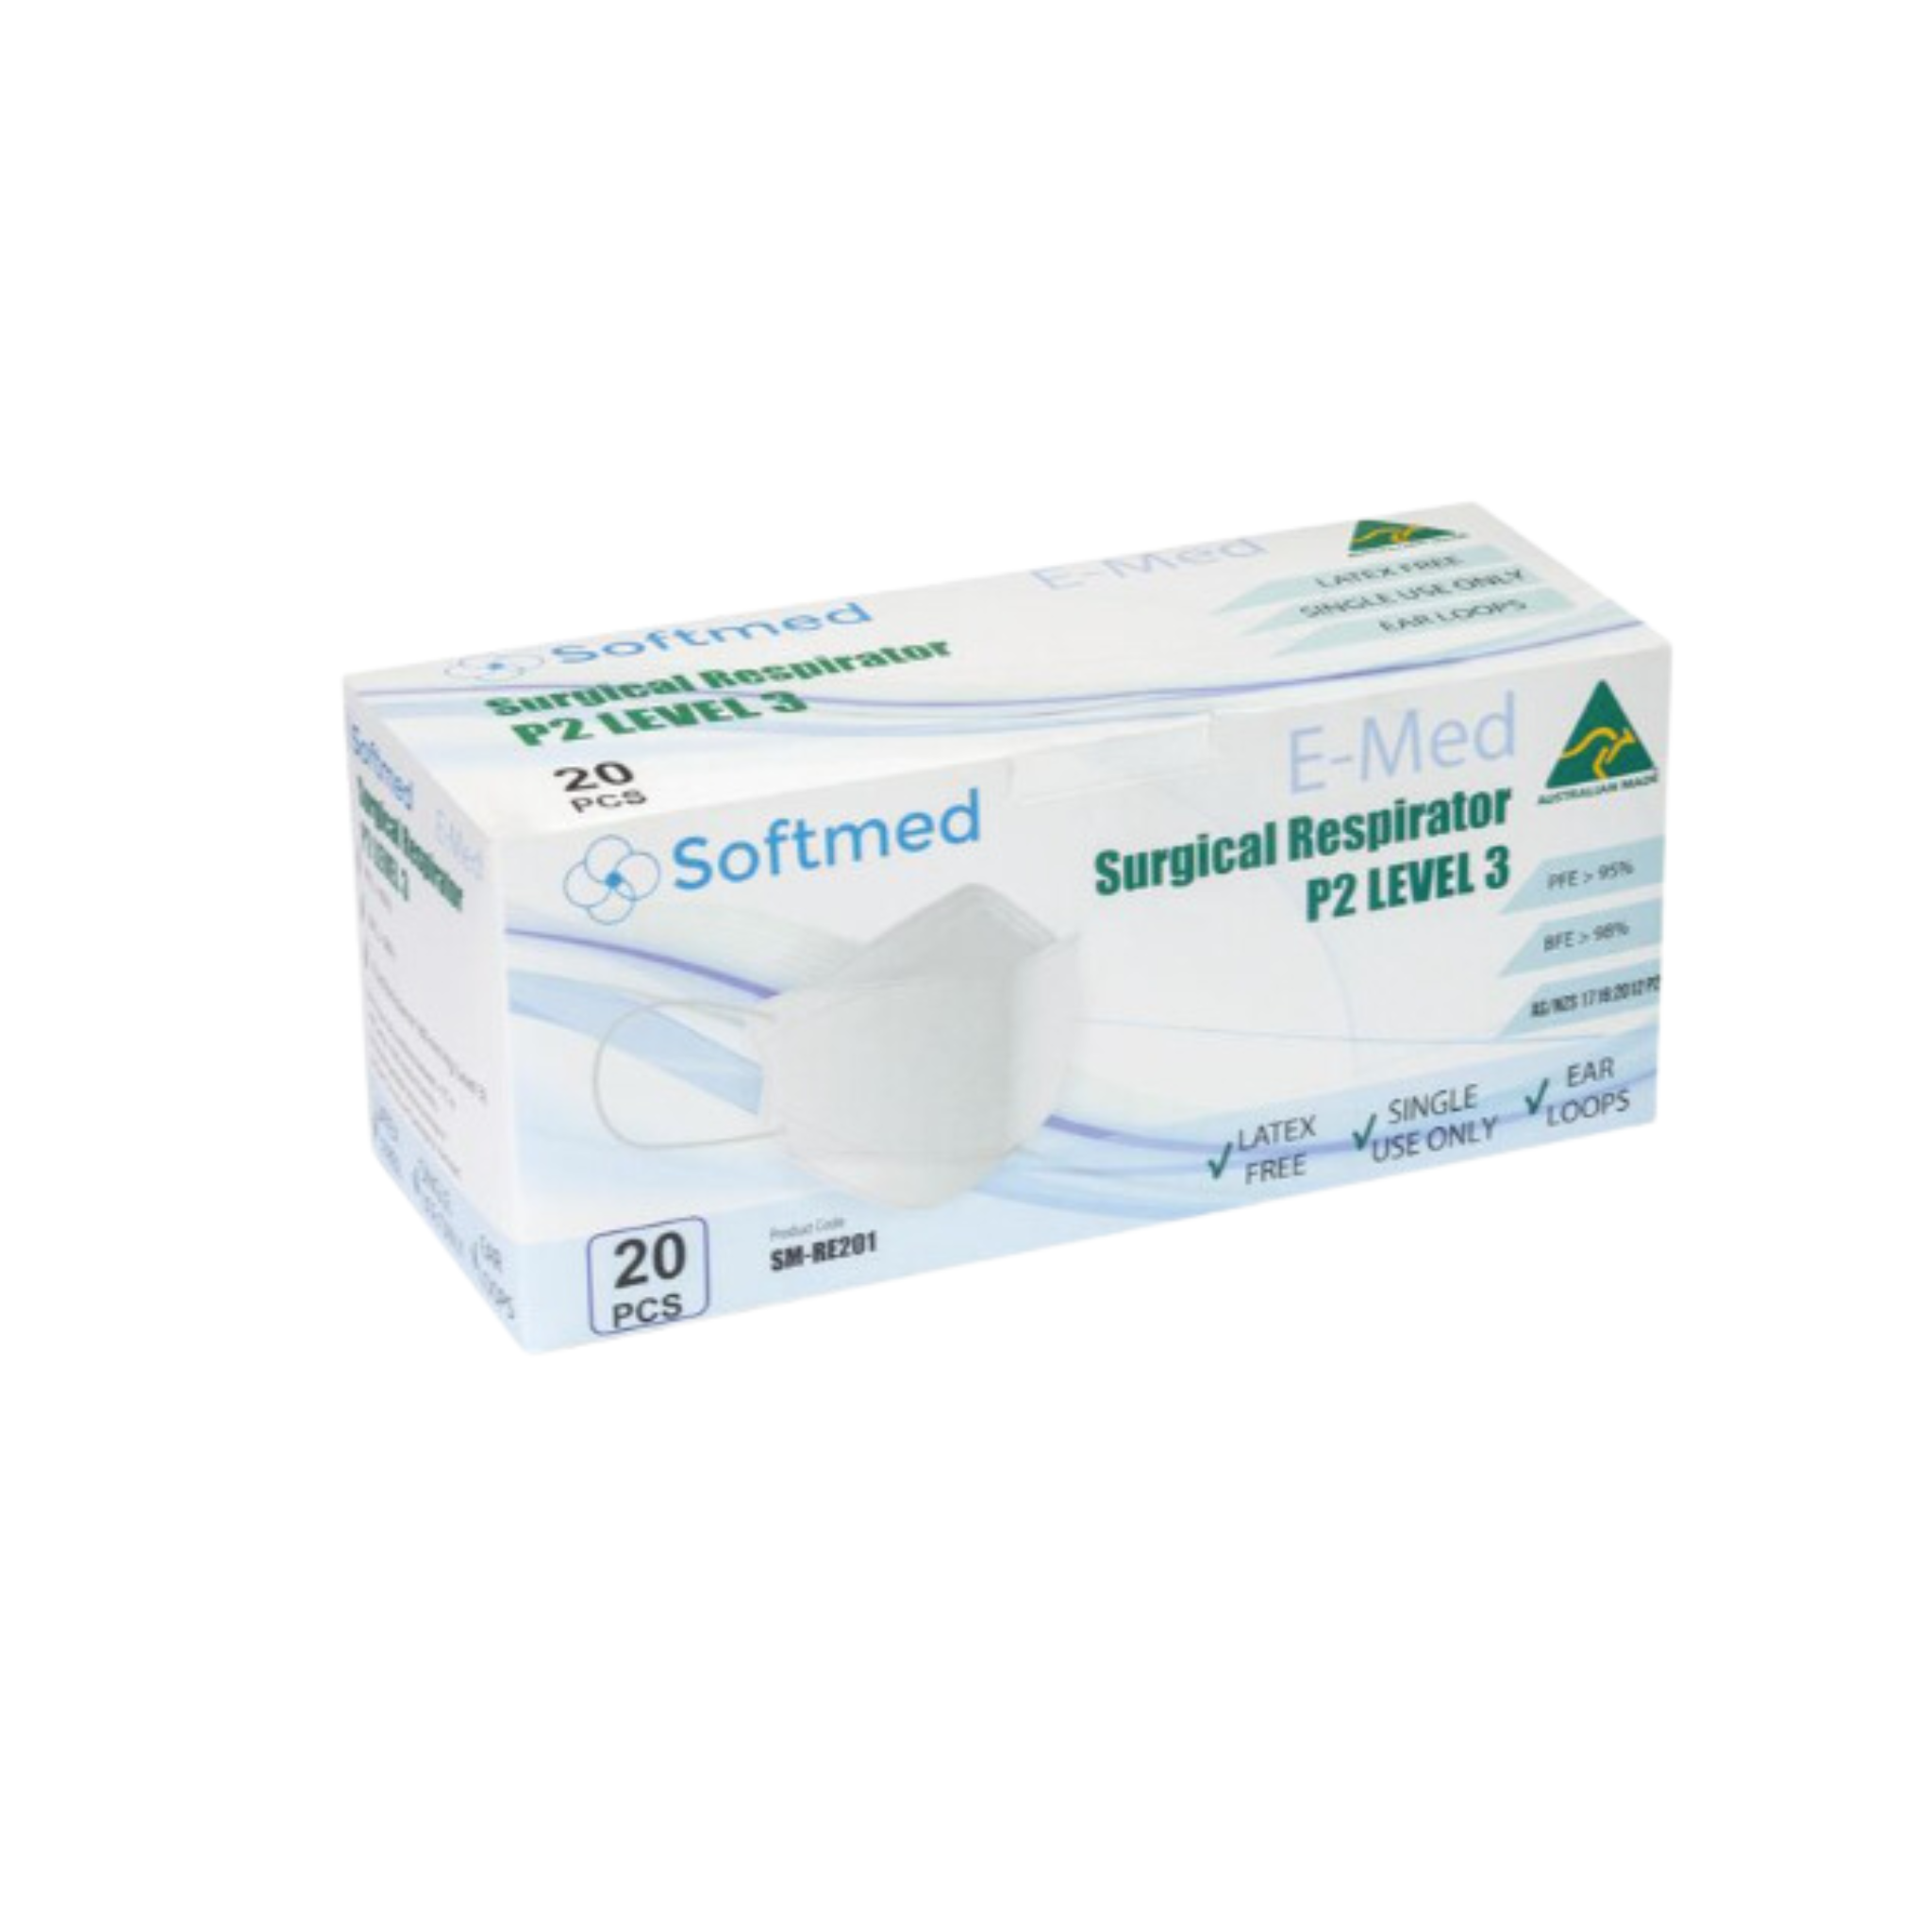 Softmed E-Med Surgical Respirator Mask P2 Level 3 - 20 Pack